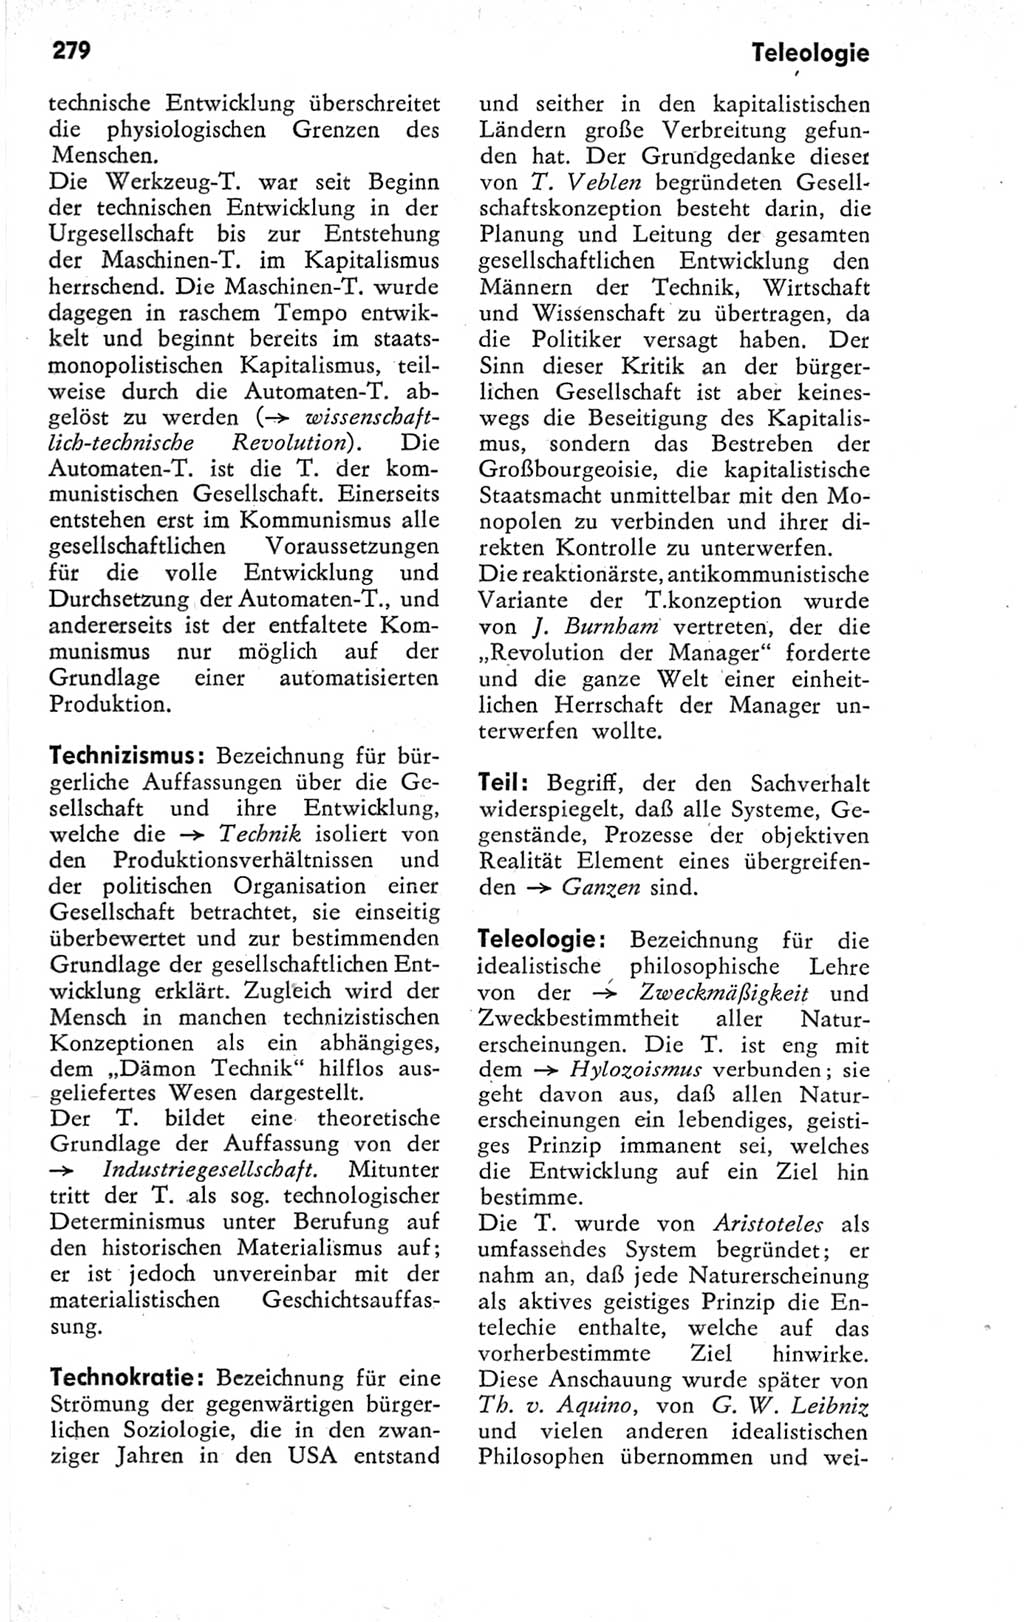 Kleines Wörterbuch der marxistisch-leninistischen Philosophie [Deutsche Demokratische Republik (DDR)] 1974, Seite 279 (Kl. Wb. ML Phil. DDR 1974, S. 279)